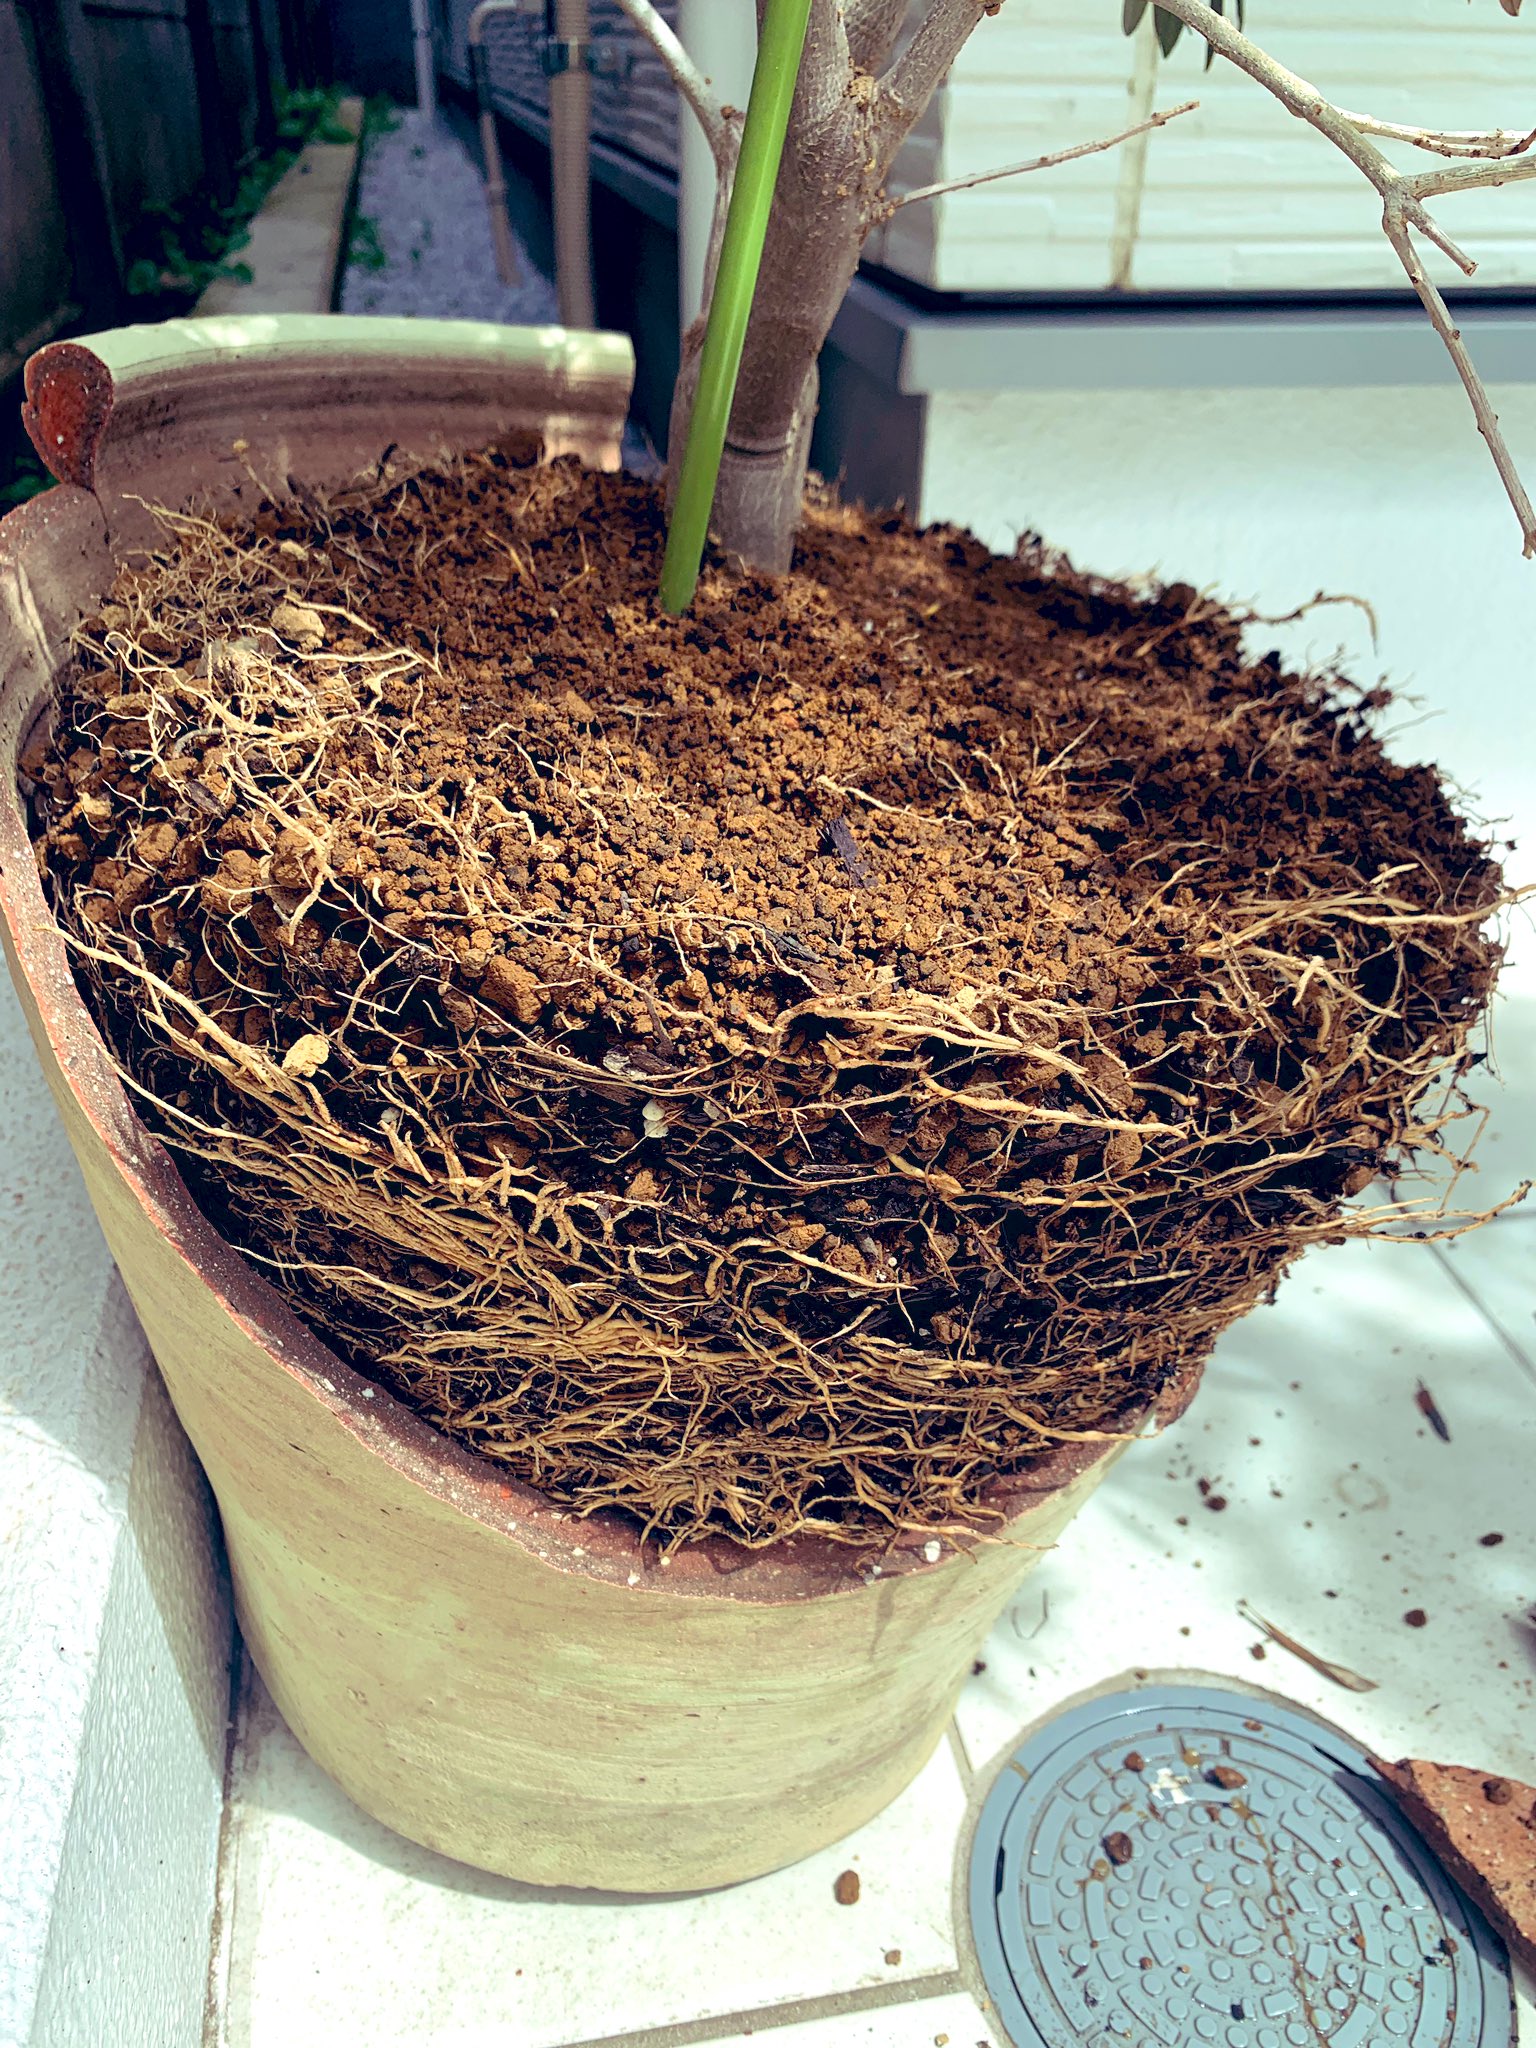 四角い林檎 台風で破壊されたオリーブですが 根詰まりするほど根が張っていて植え替え 時だったかもしれません 今朝大きめのプラ製鉢を近所の花屋で購入し 植え替えました オリーブ ガーデニング 台風